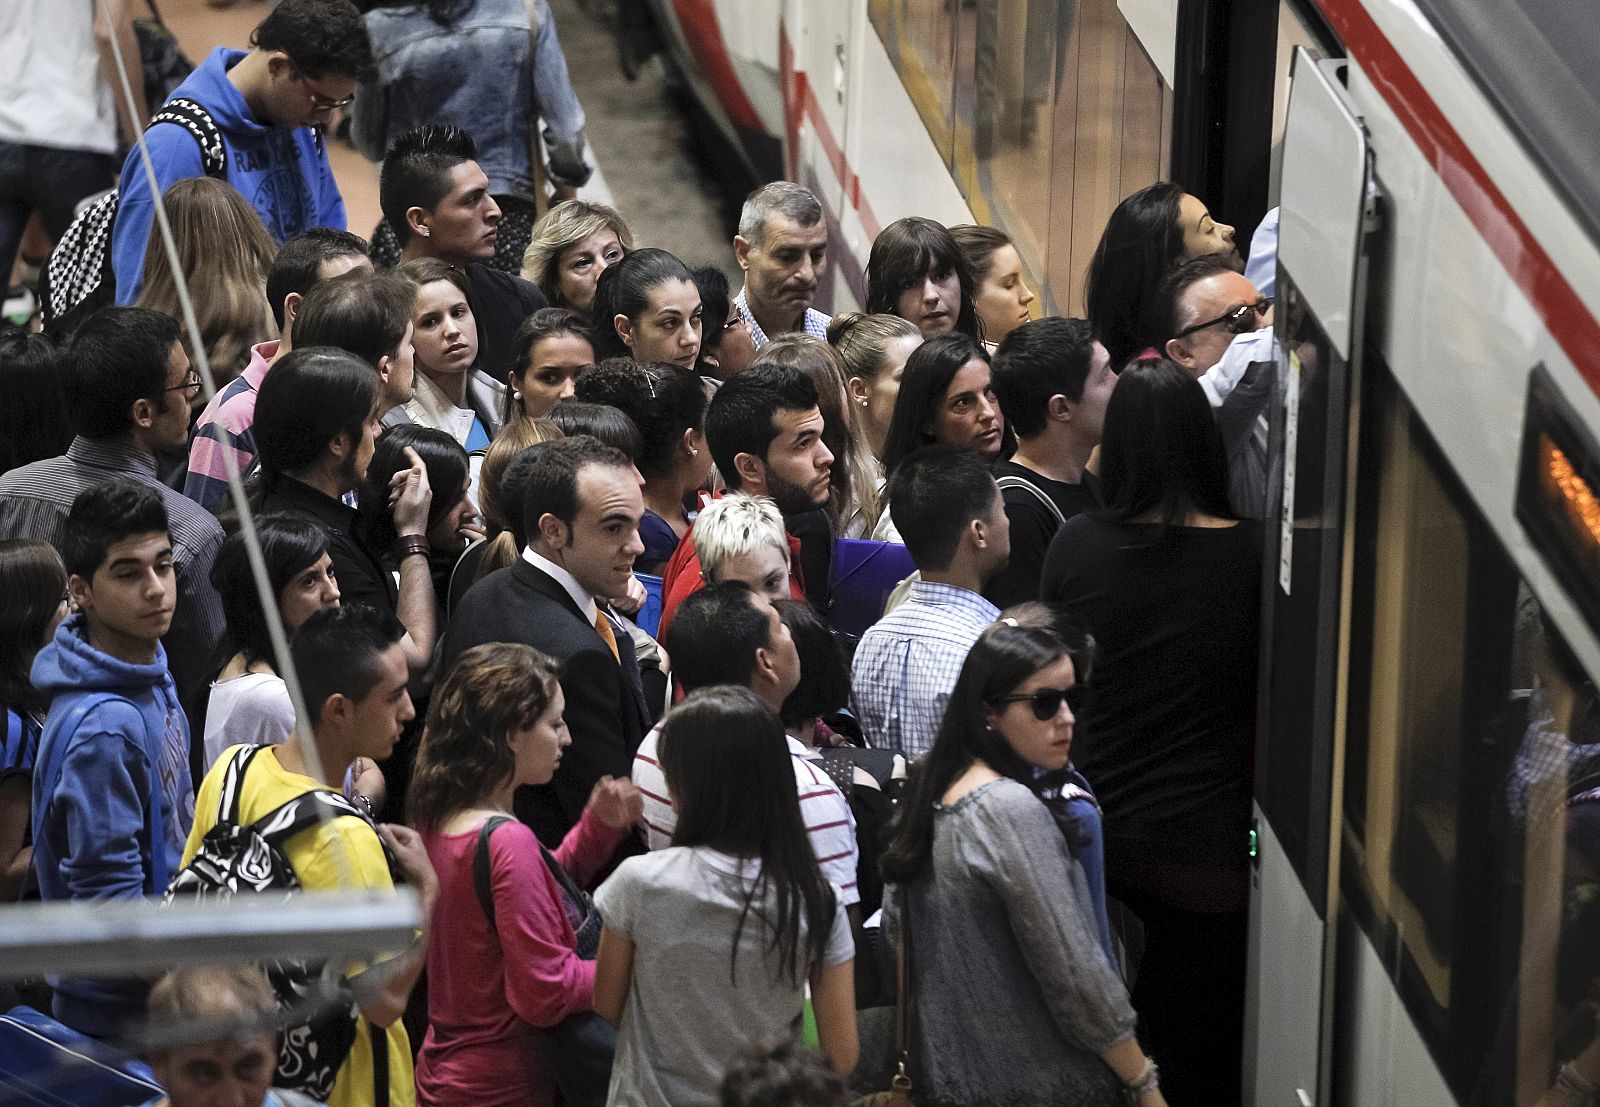 Numerosos pasajeros esperan para entrar en un tren, en la madrileña estación de Atocha